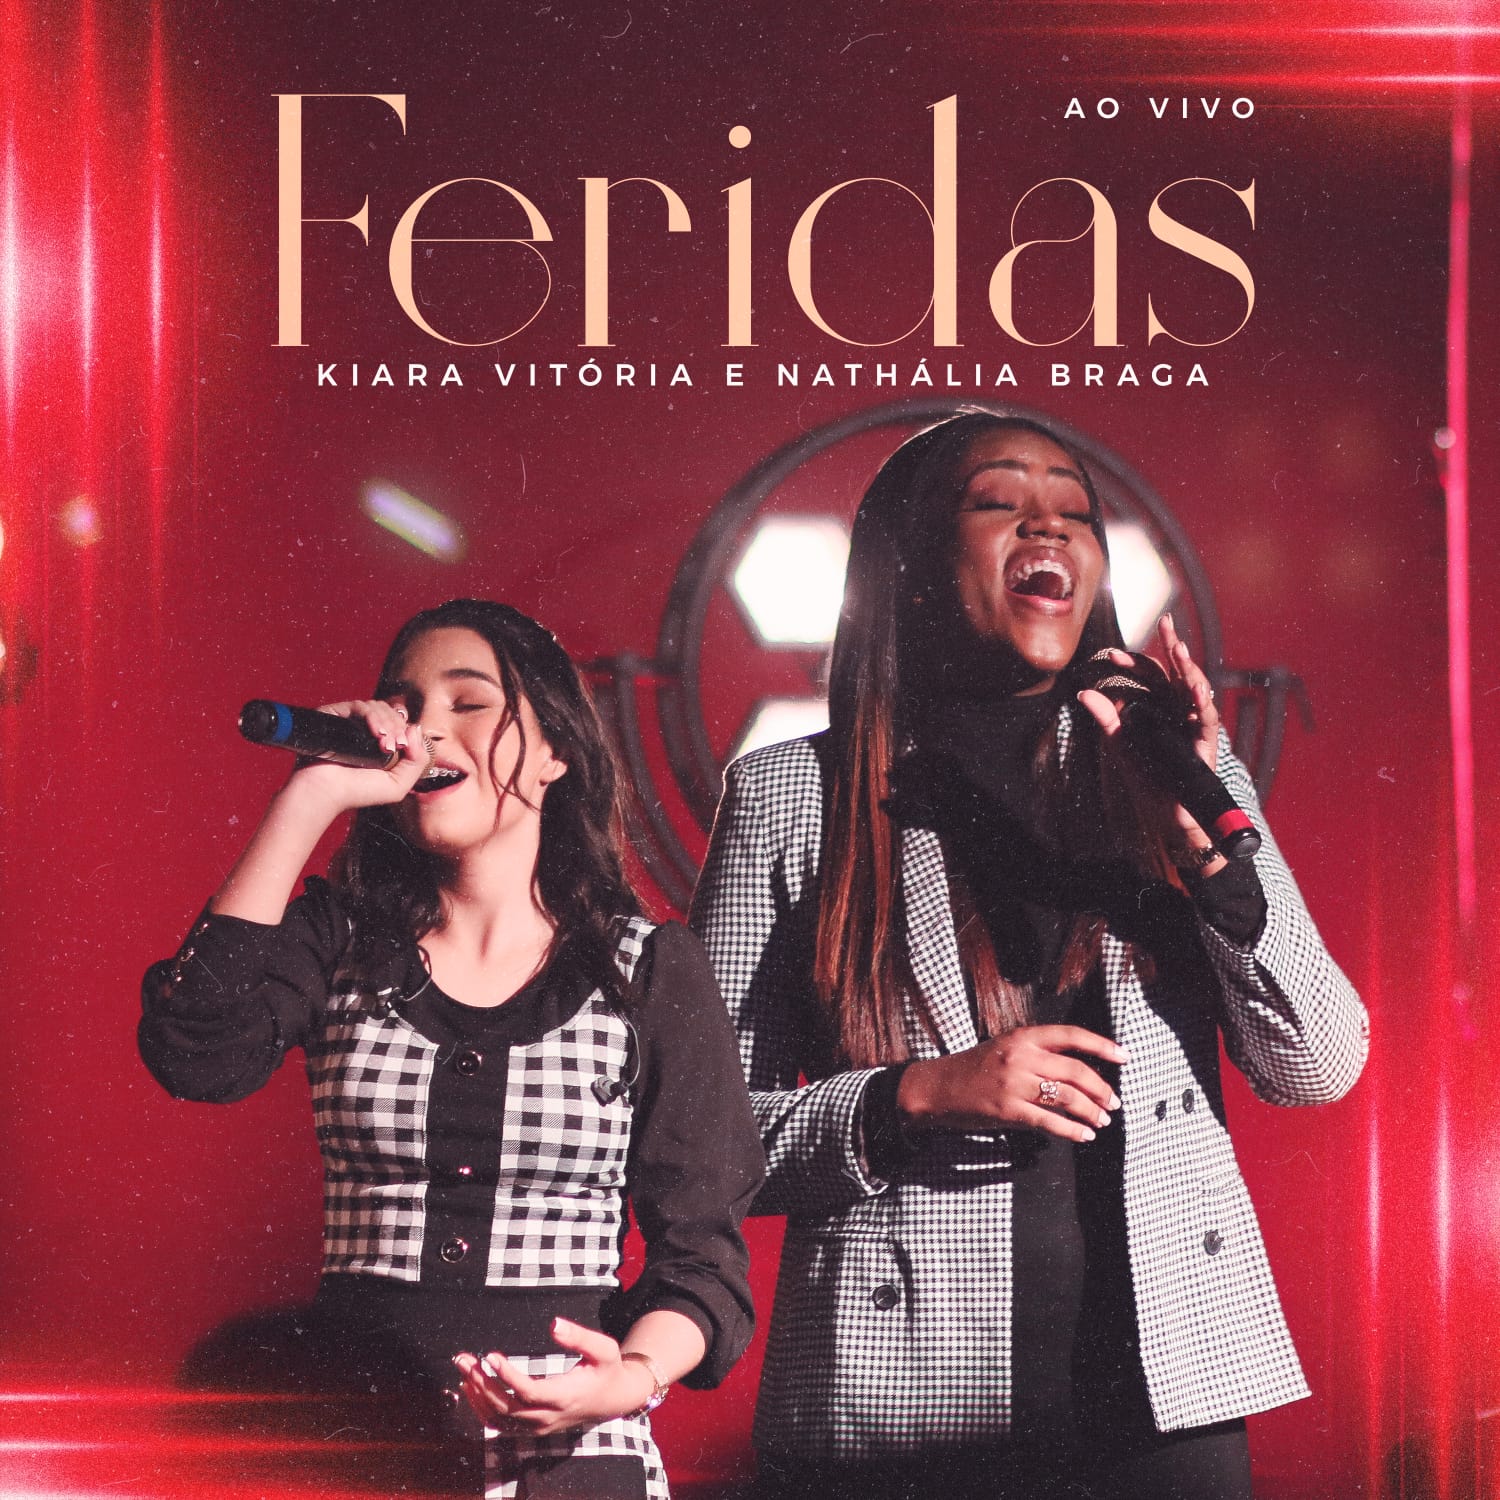 O dueto de Kiara Vitória e Nathália Braga em “Feridas”